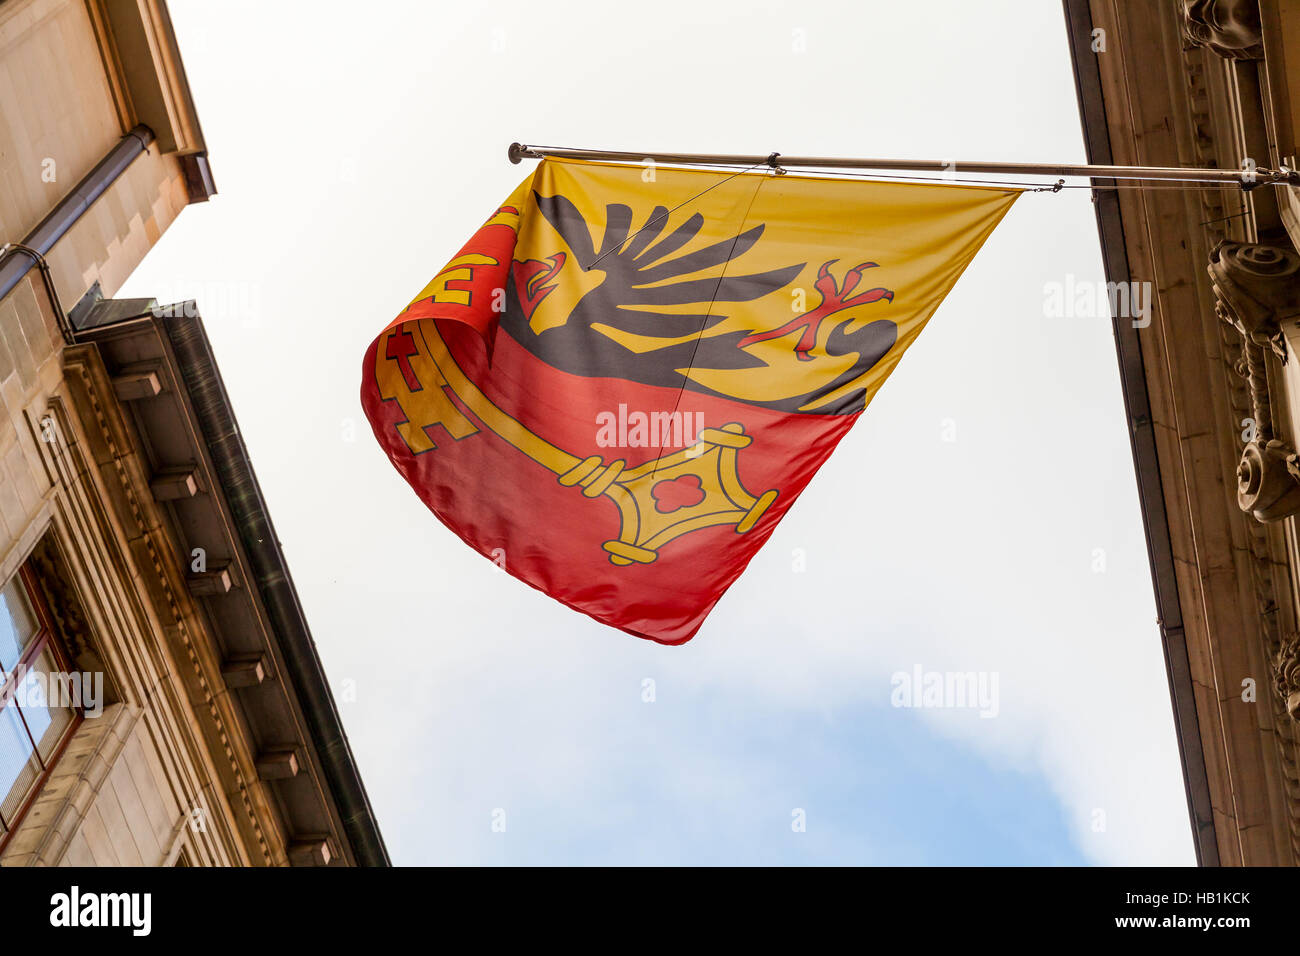 La ville de Genève, Suisse. Avec armoiries drapeau monté sur mur ancien bâtiment montrant l'aigle impérial et une clef de Saint-Pierre Banque D'Images